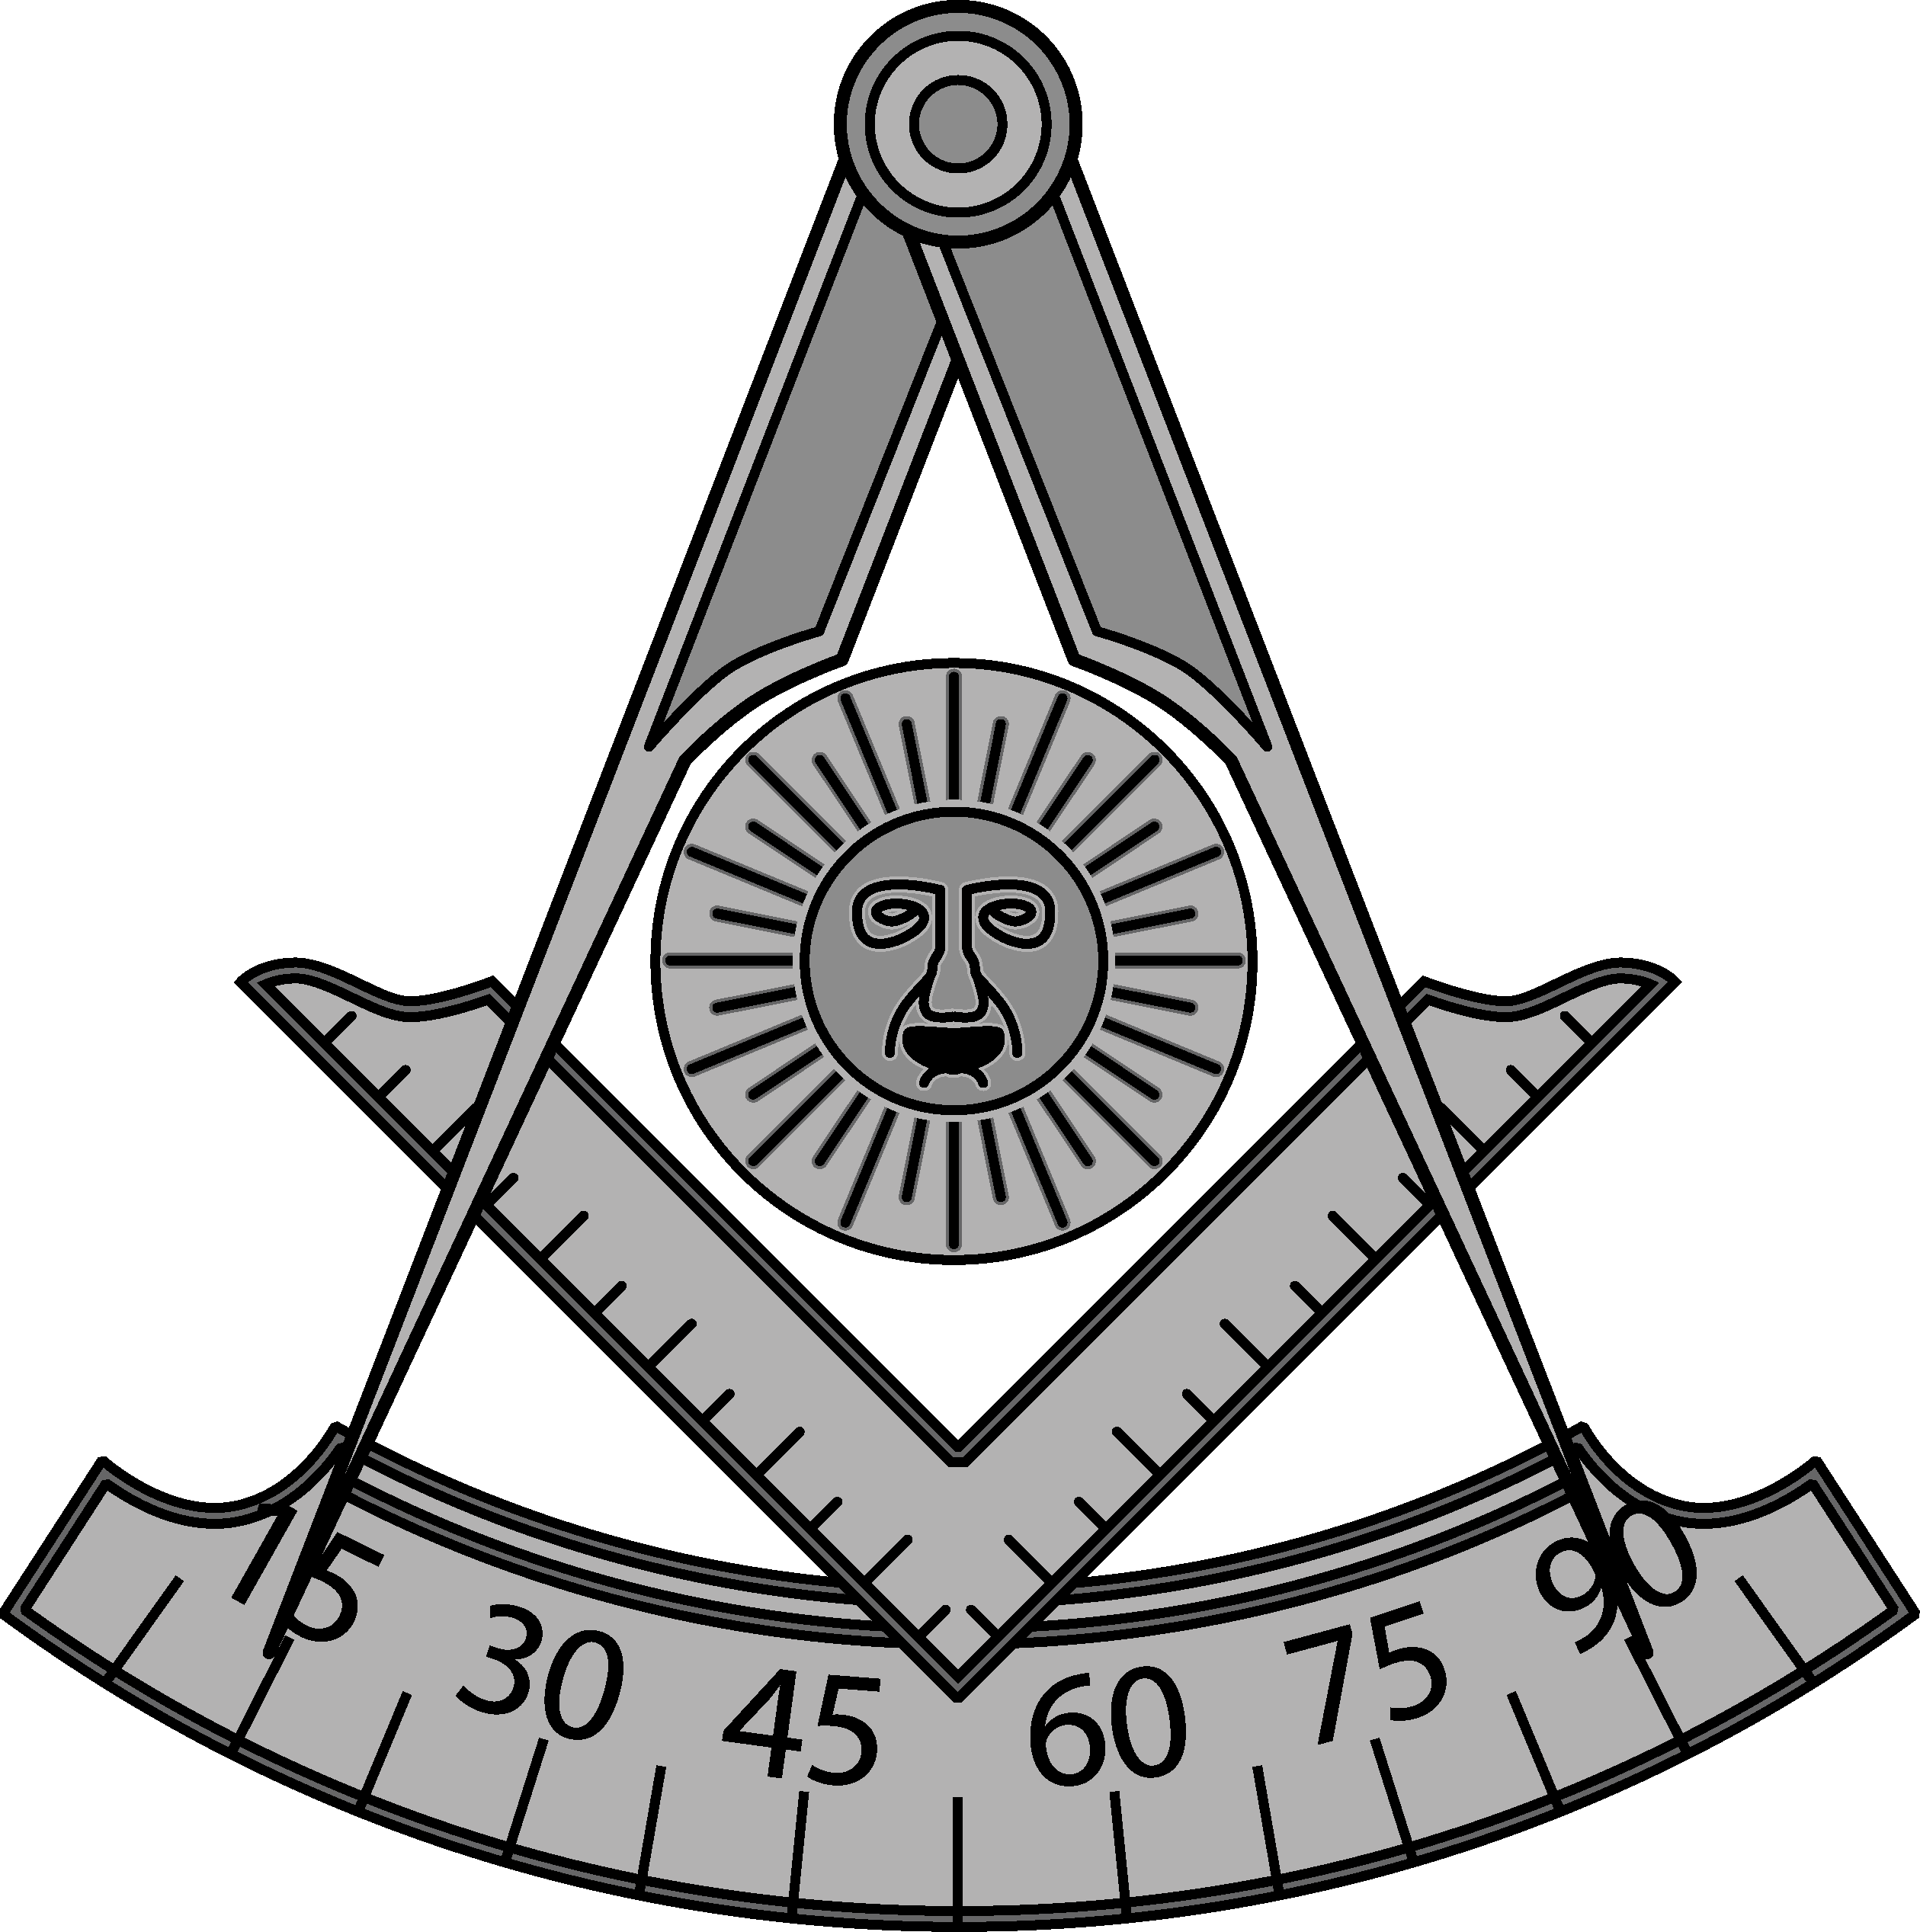 Jackson 1869 *h - Masonic Past Master Emblem (1192x1200)